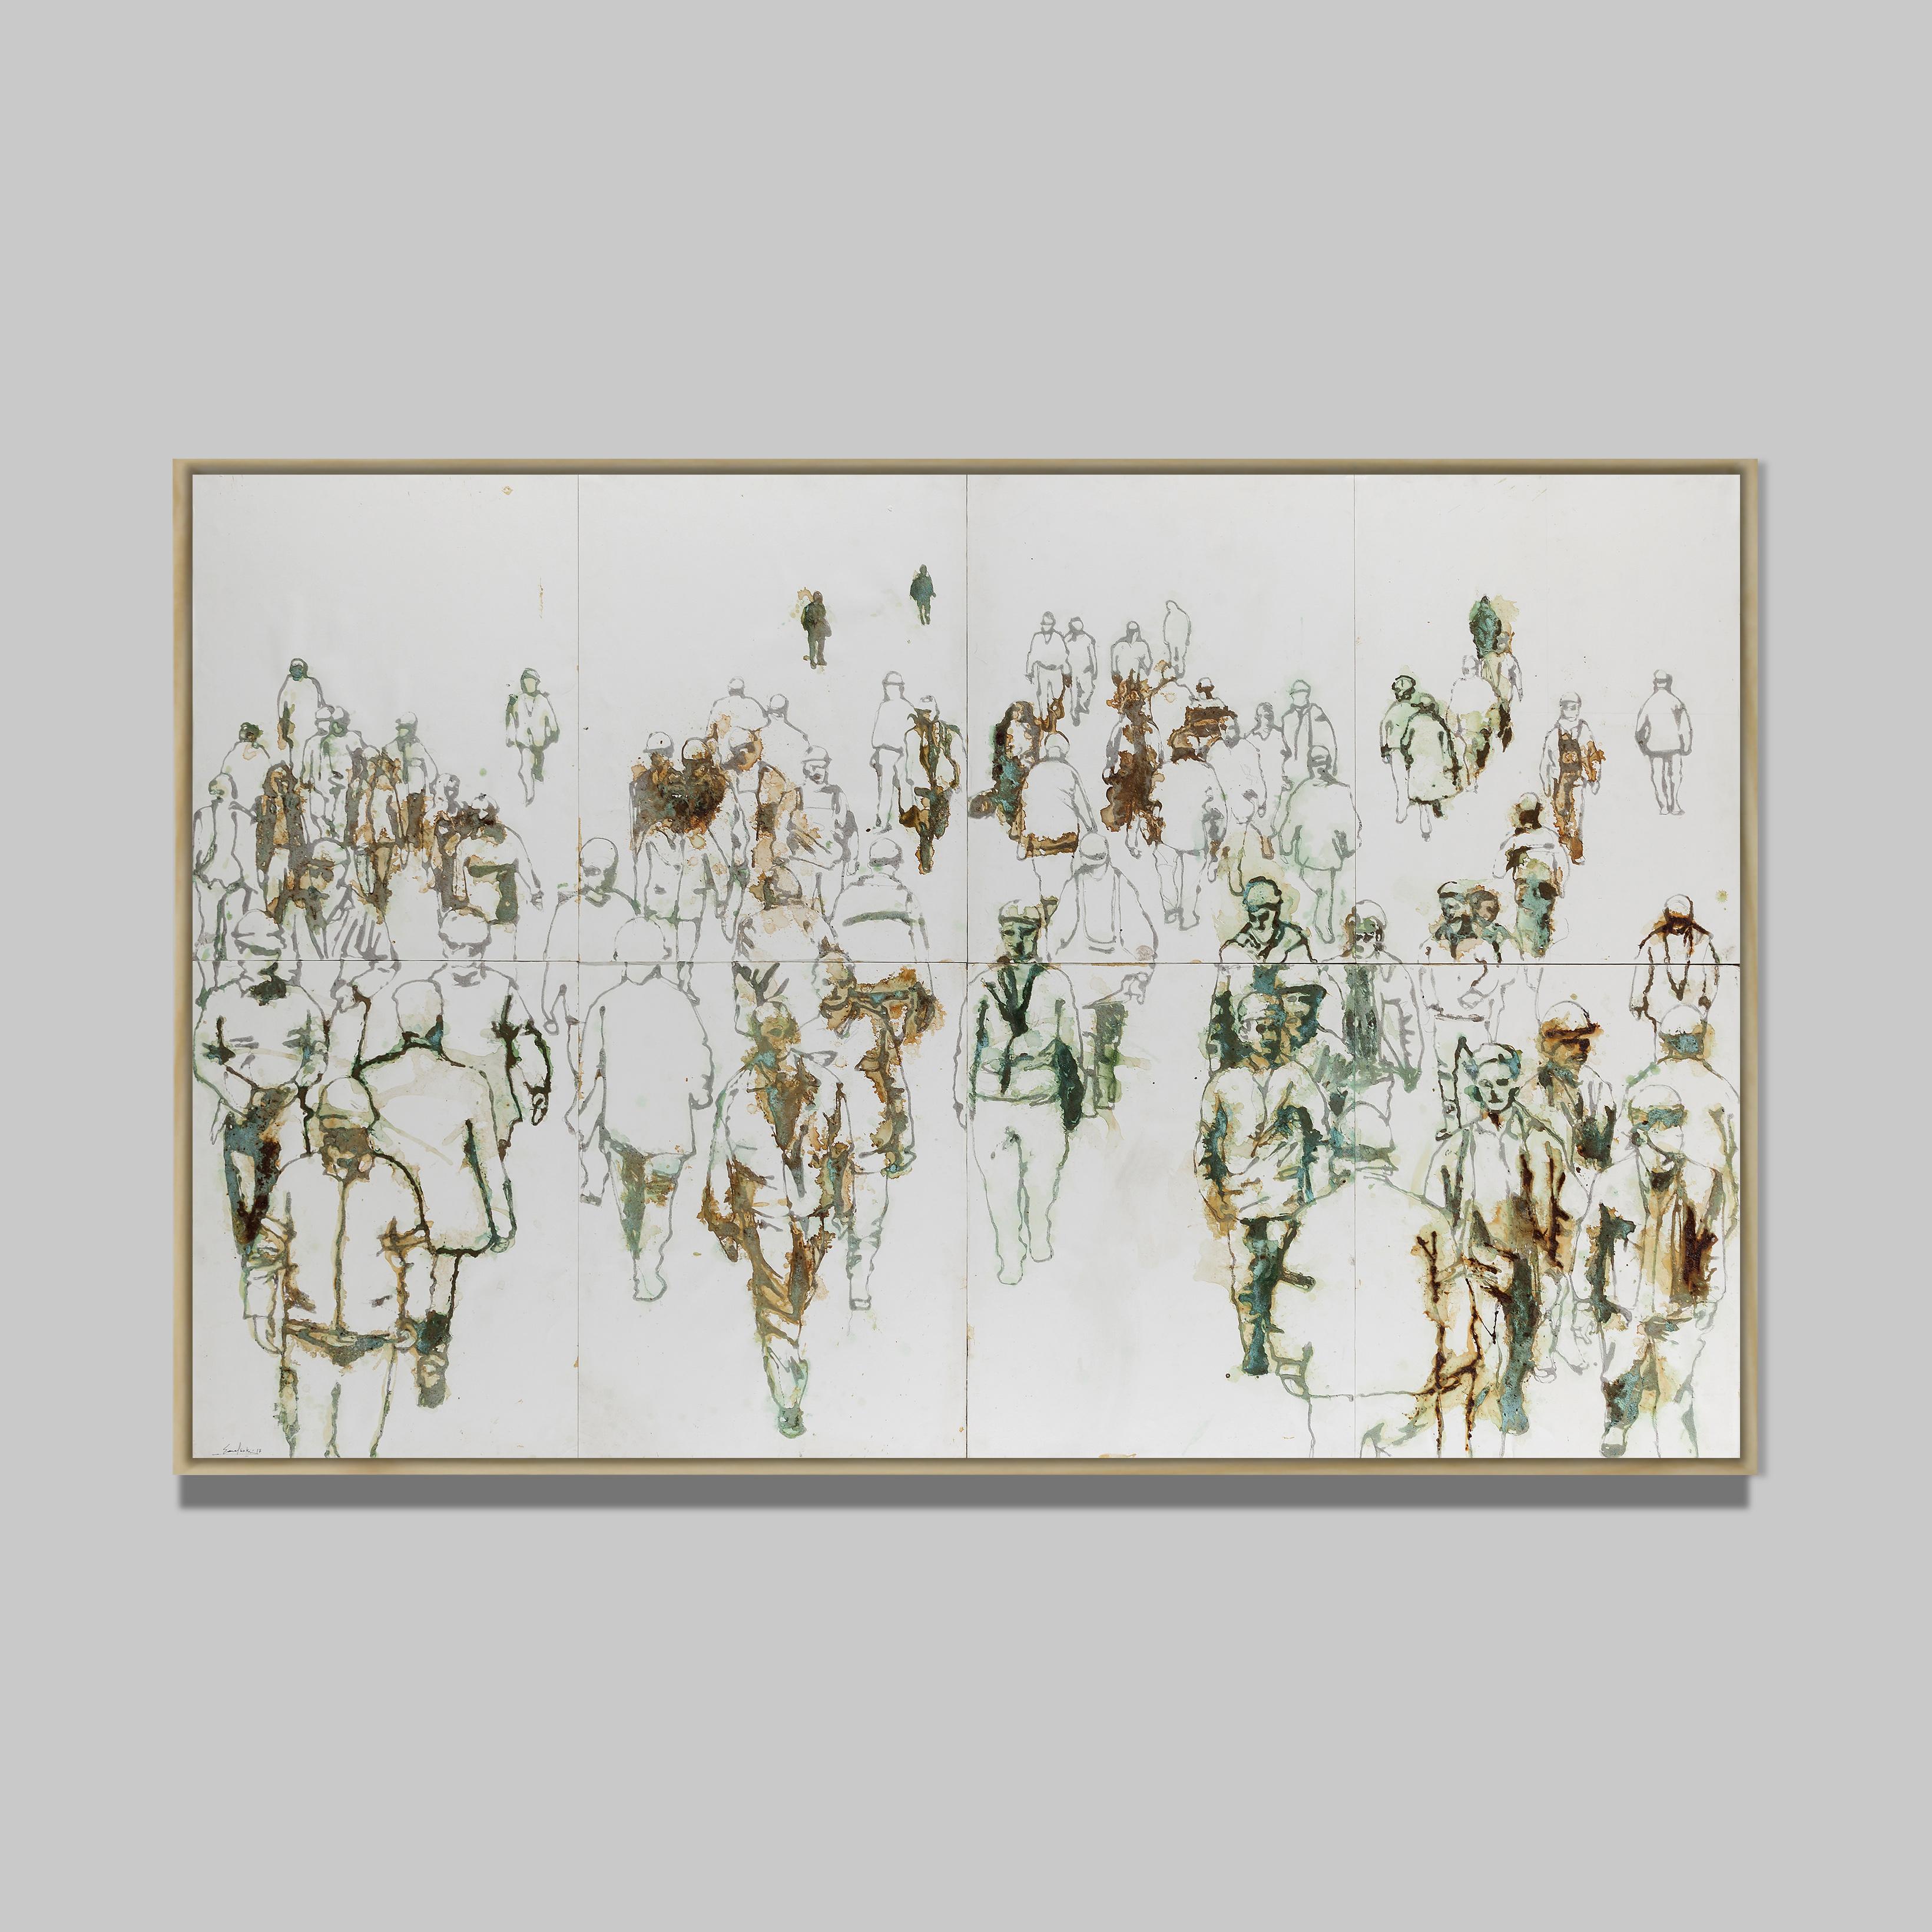 Kamal Saki
Société rouillée, 2019
Technique mixte sur toile
130 x 200 cm